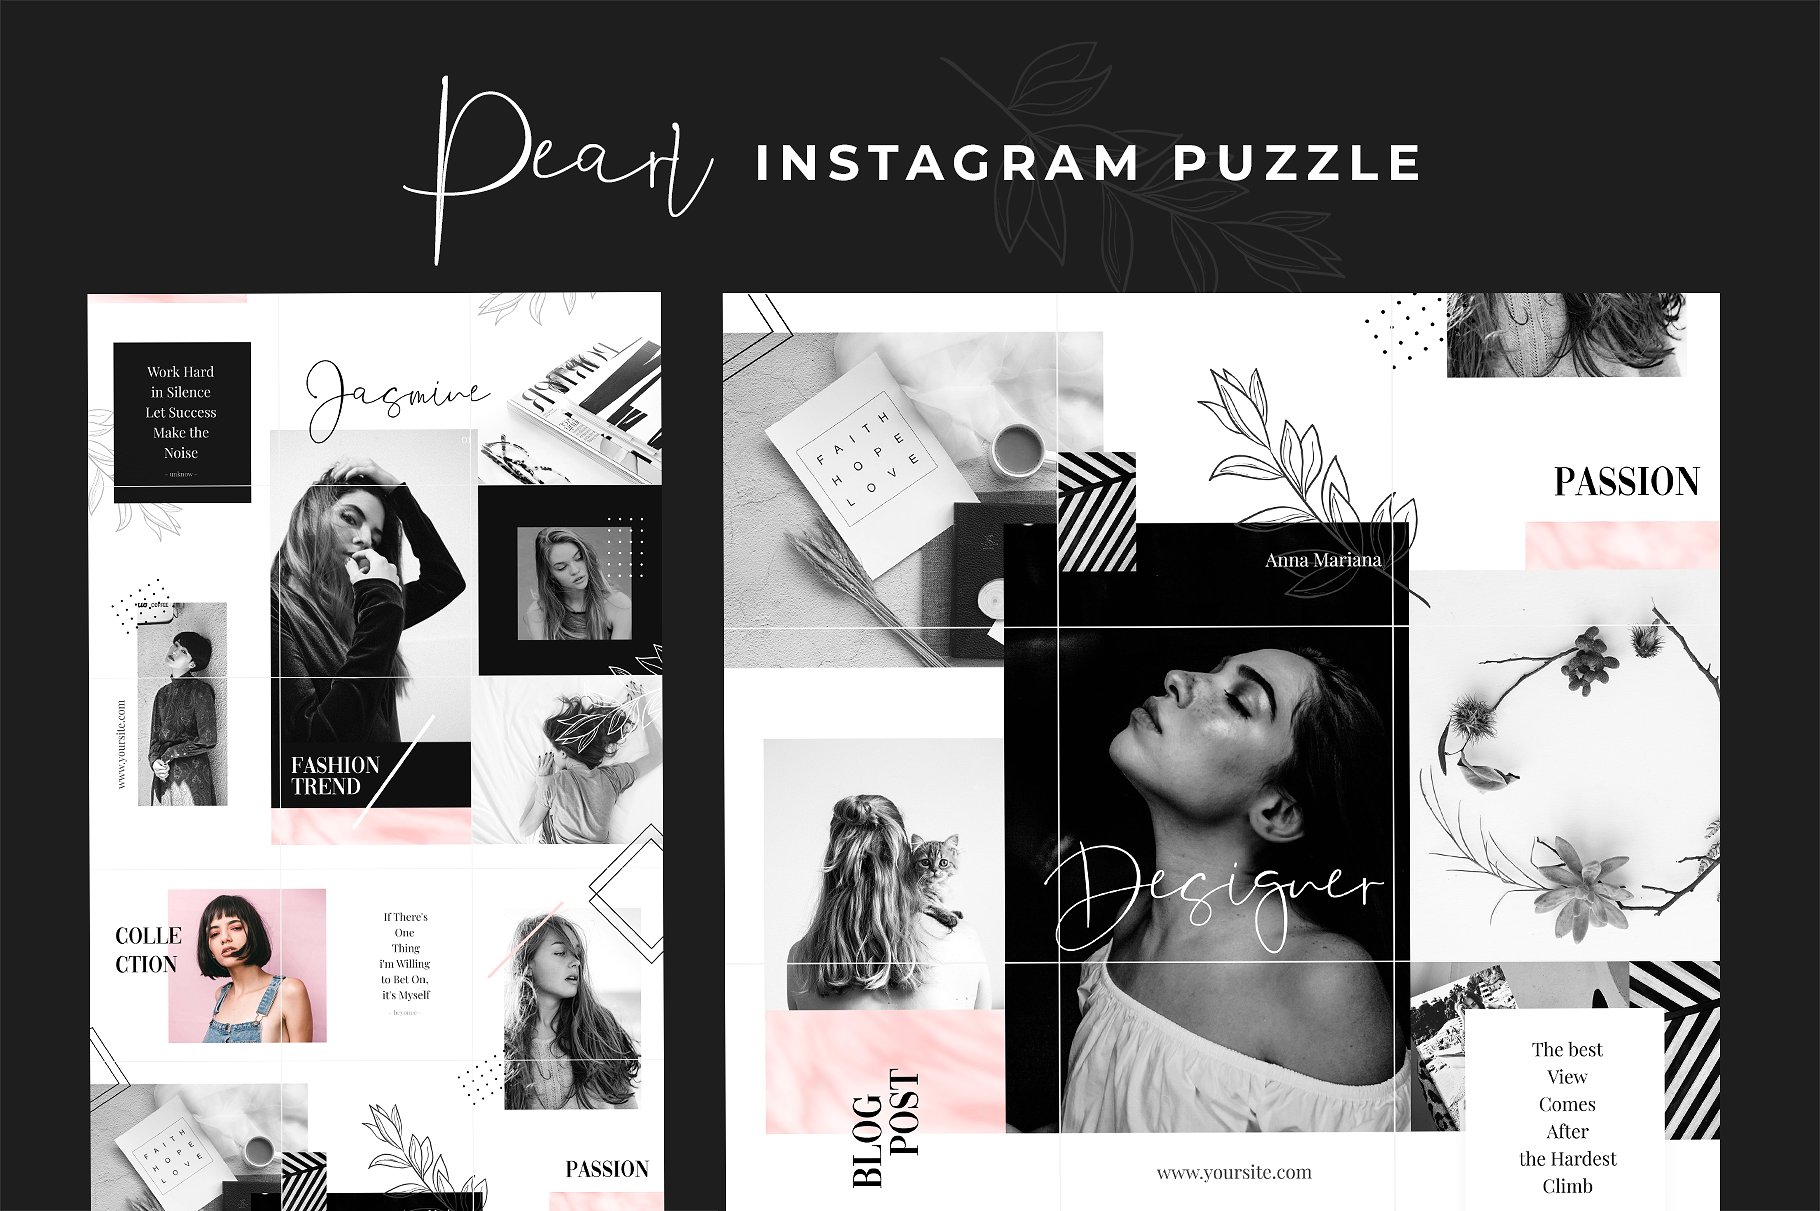 时尚高端的Instagram 社交媒体模板蚂蚁素材精选合辑下载 Royal Instagram Bundle [psd]插图(9)